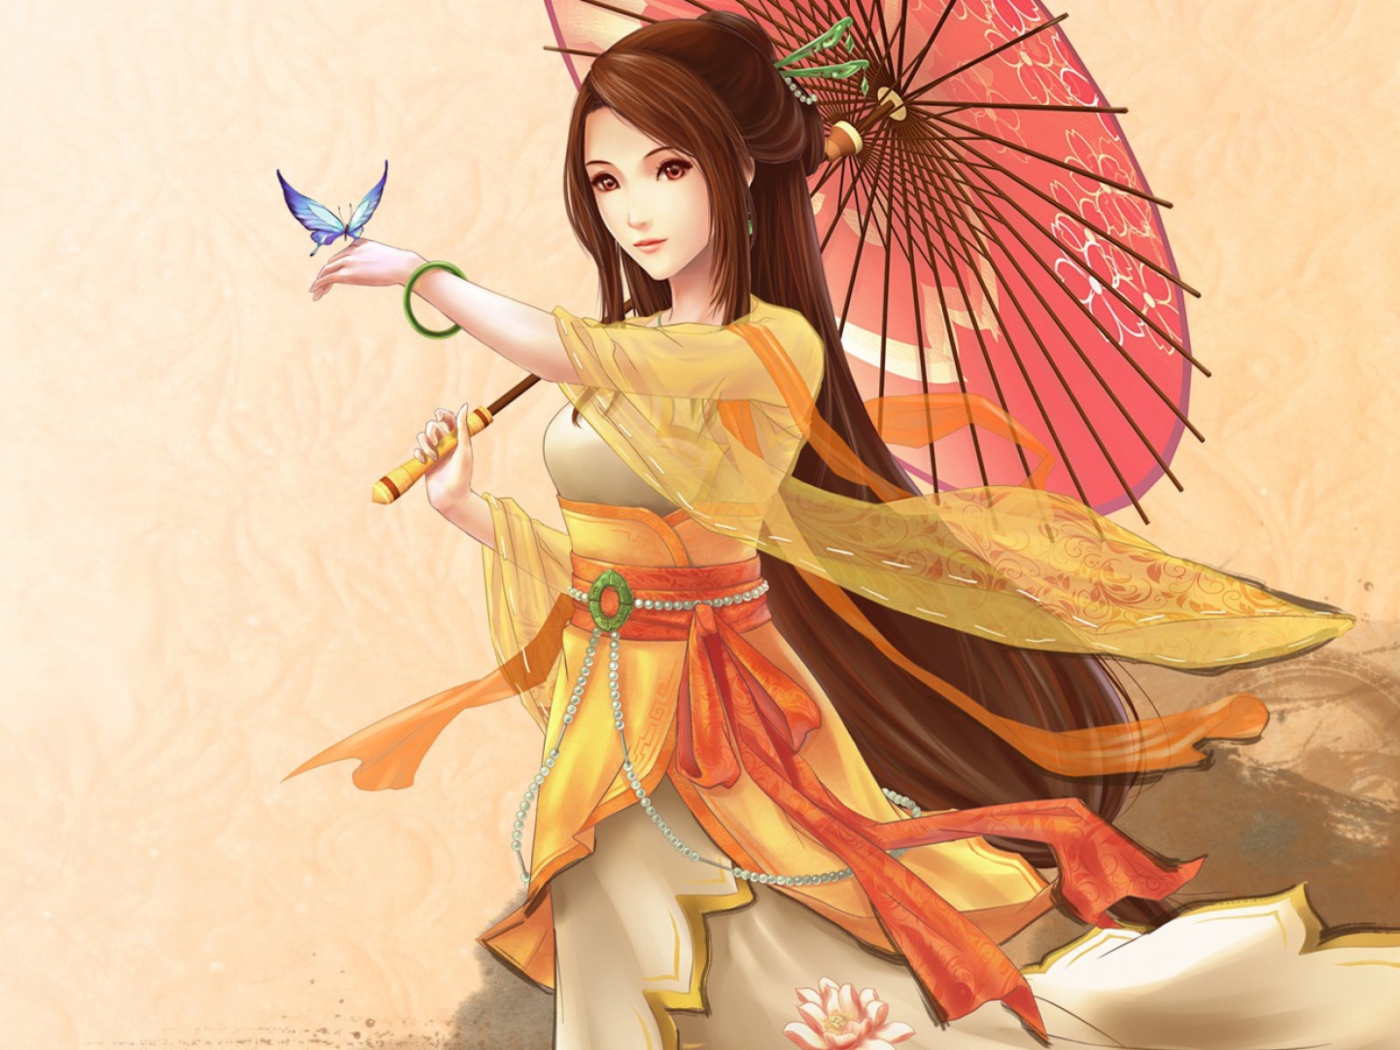 Das Japanese Woman & Butterfly Wallpaper 1400x1050